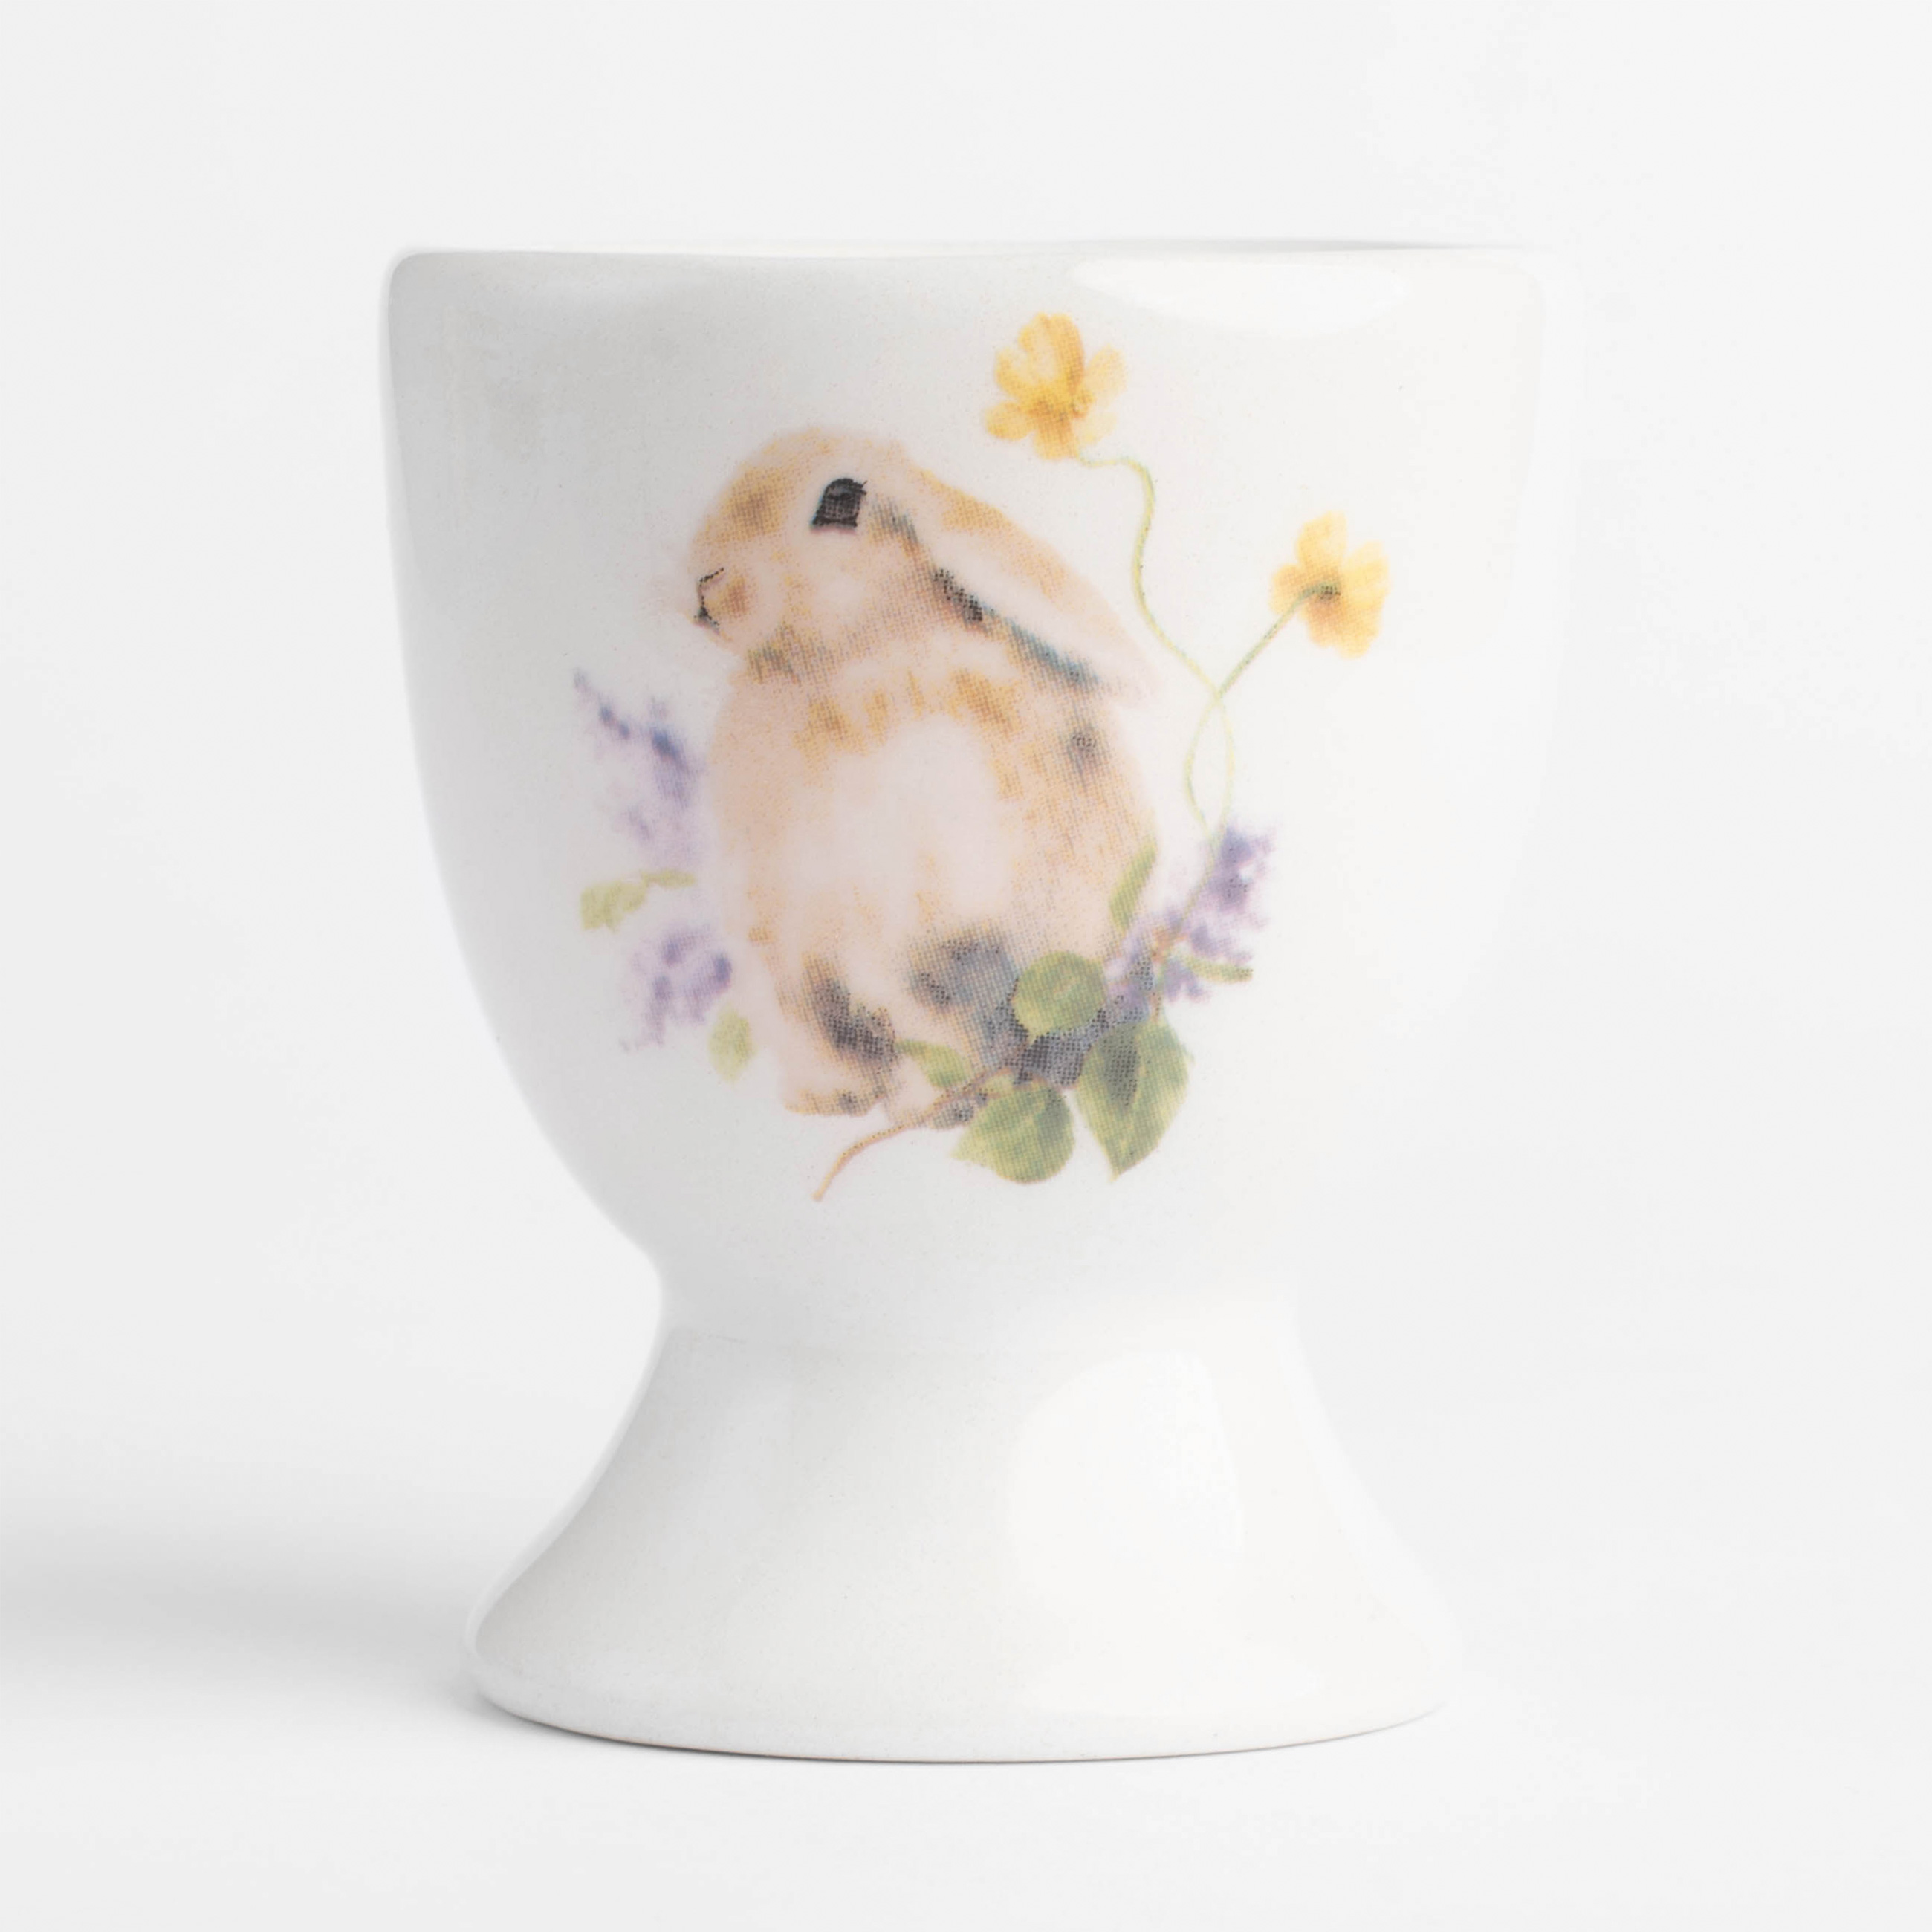 Подставка для яйца, 6 см, керамика, белая, Кролик в цветах, Easter изображение № 2